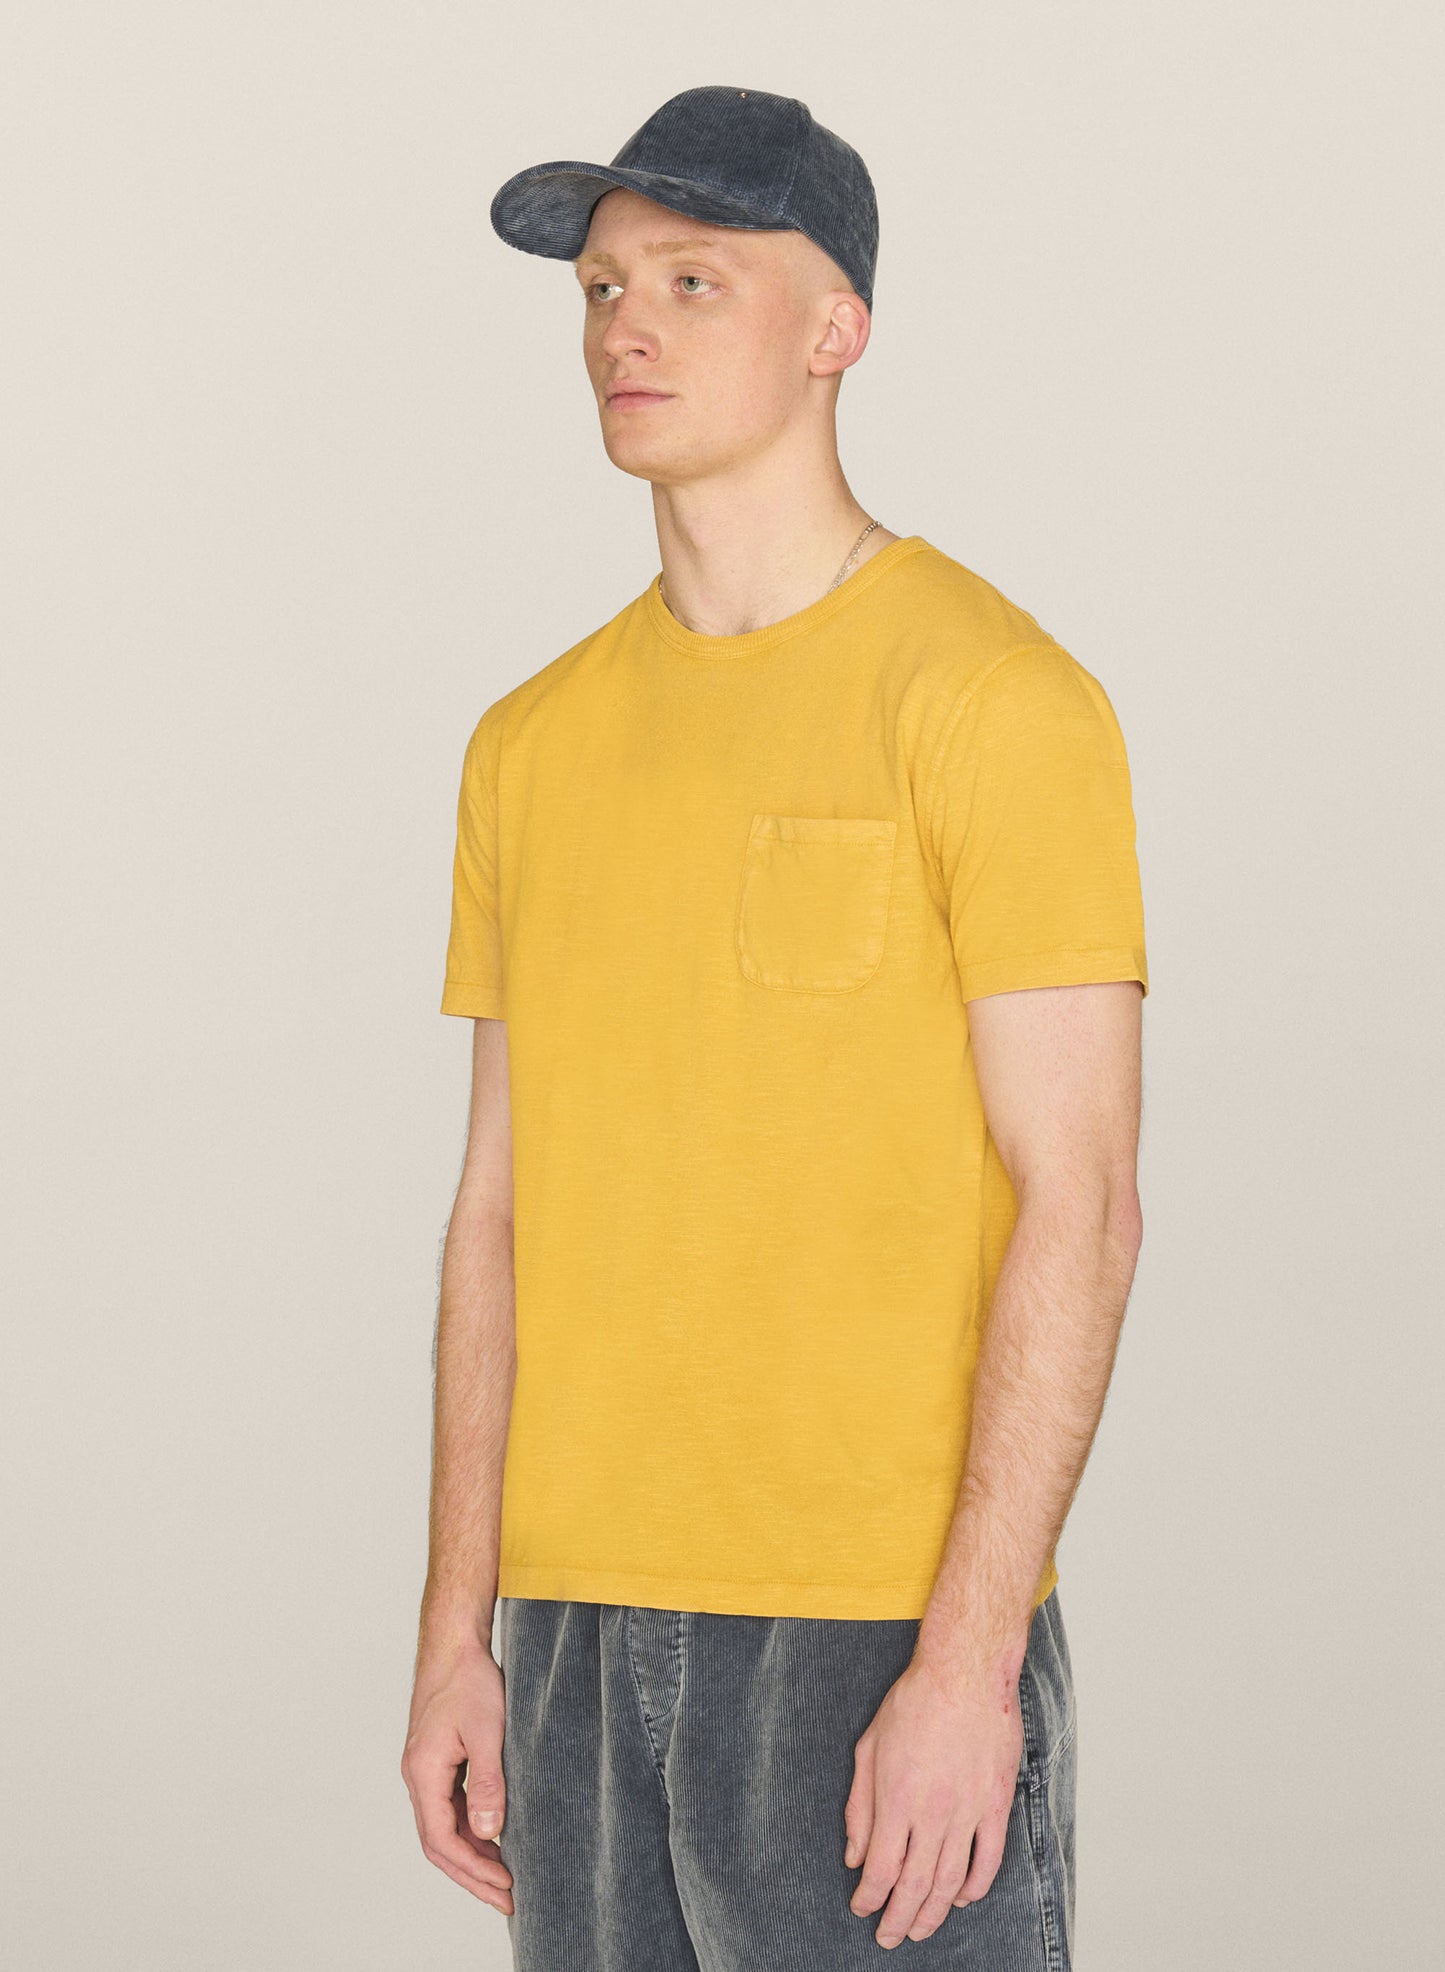 YMC Wild Ones T-Shirt - Yellow